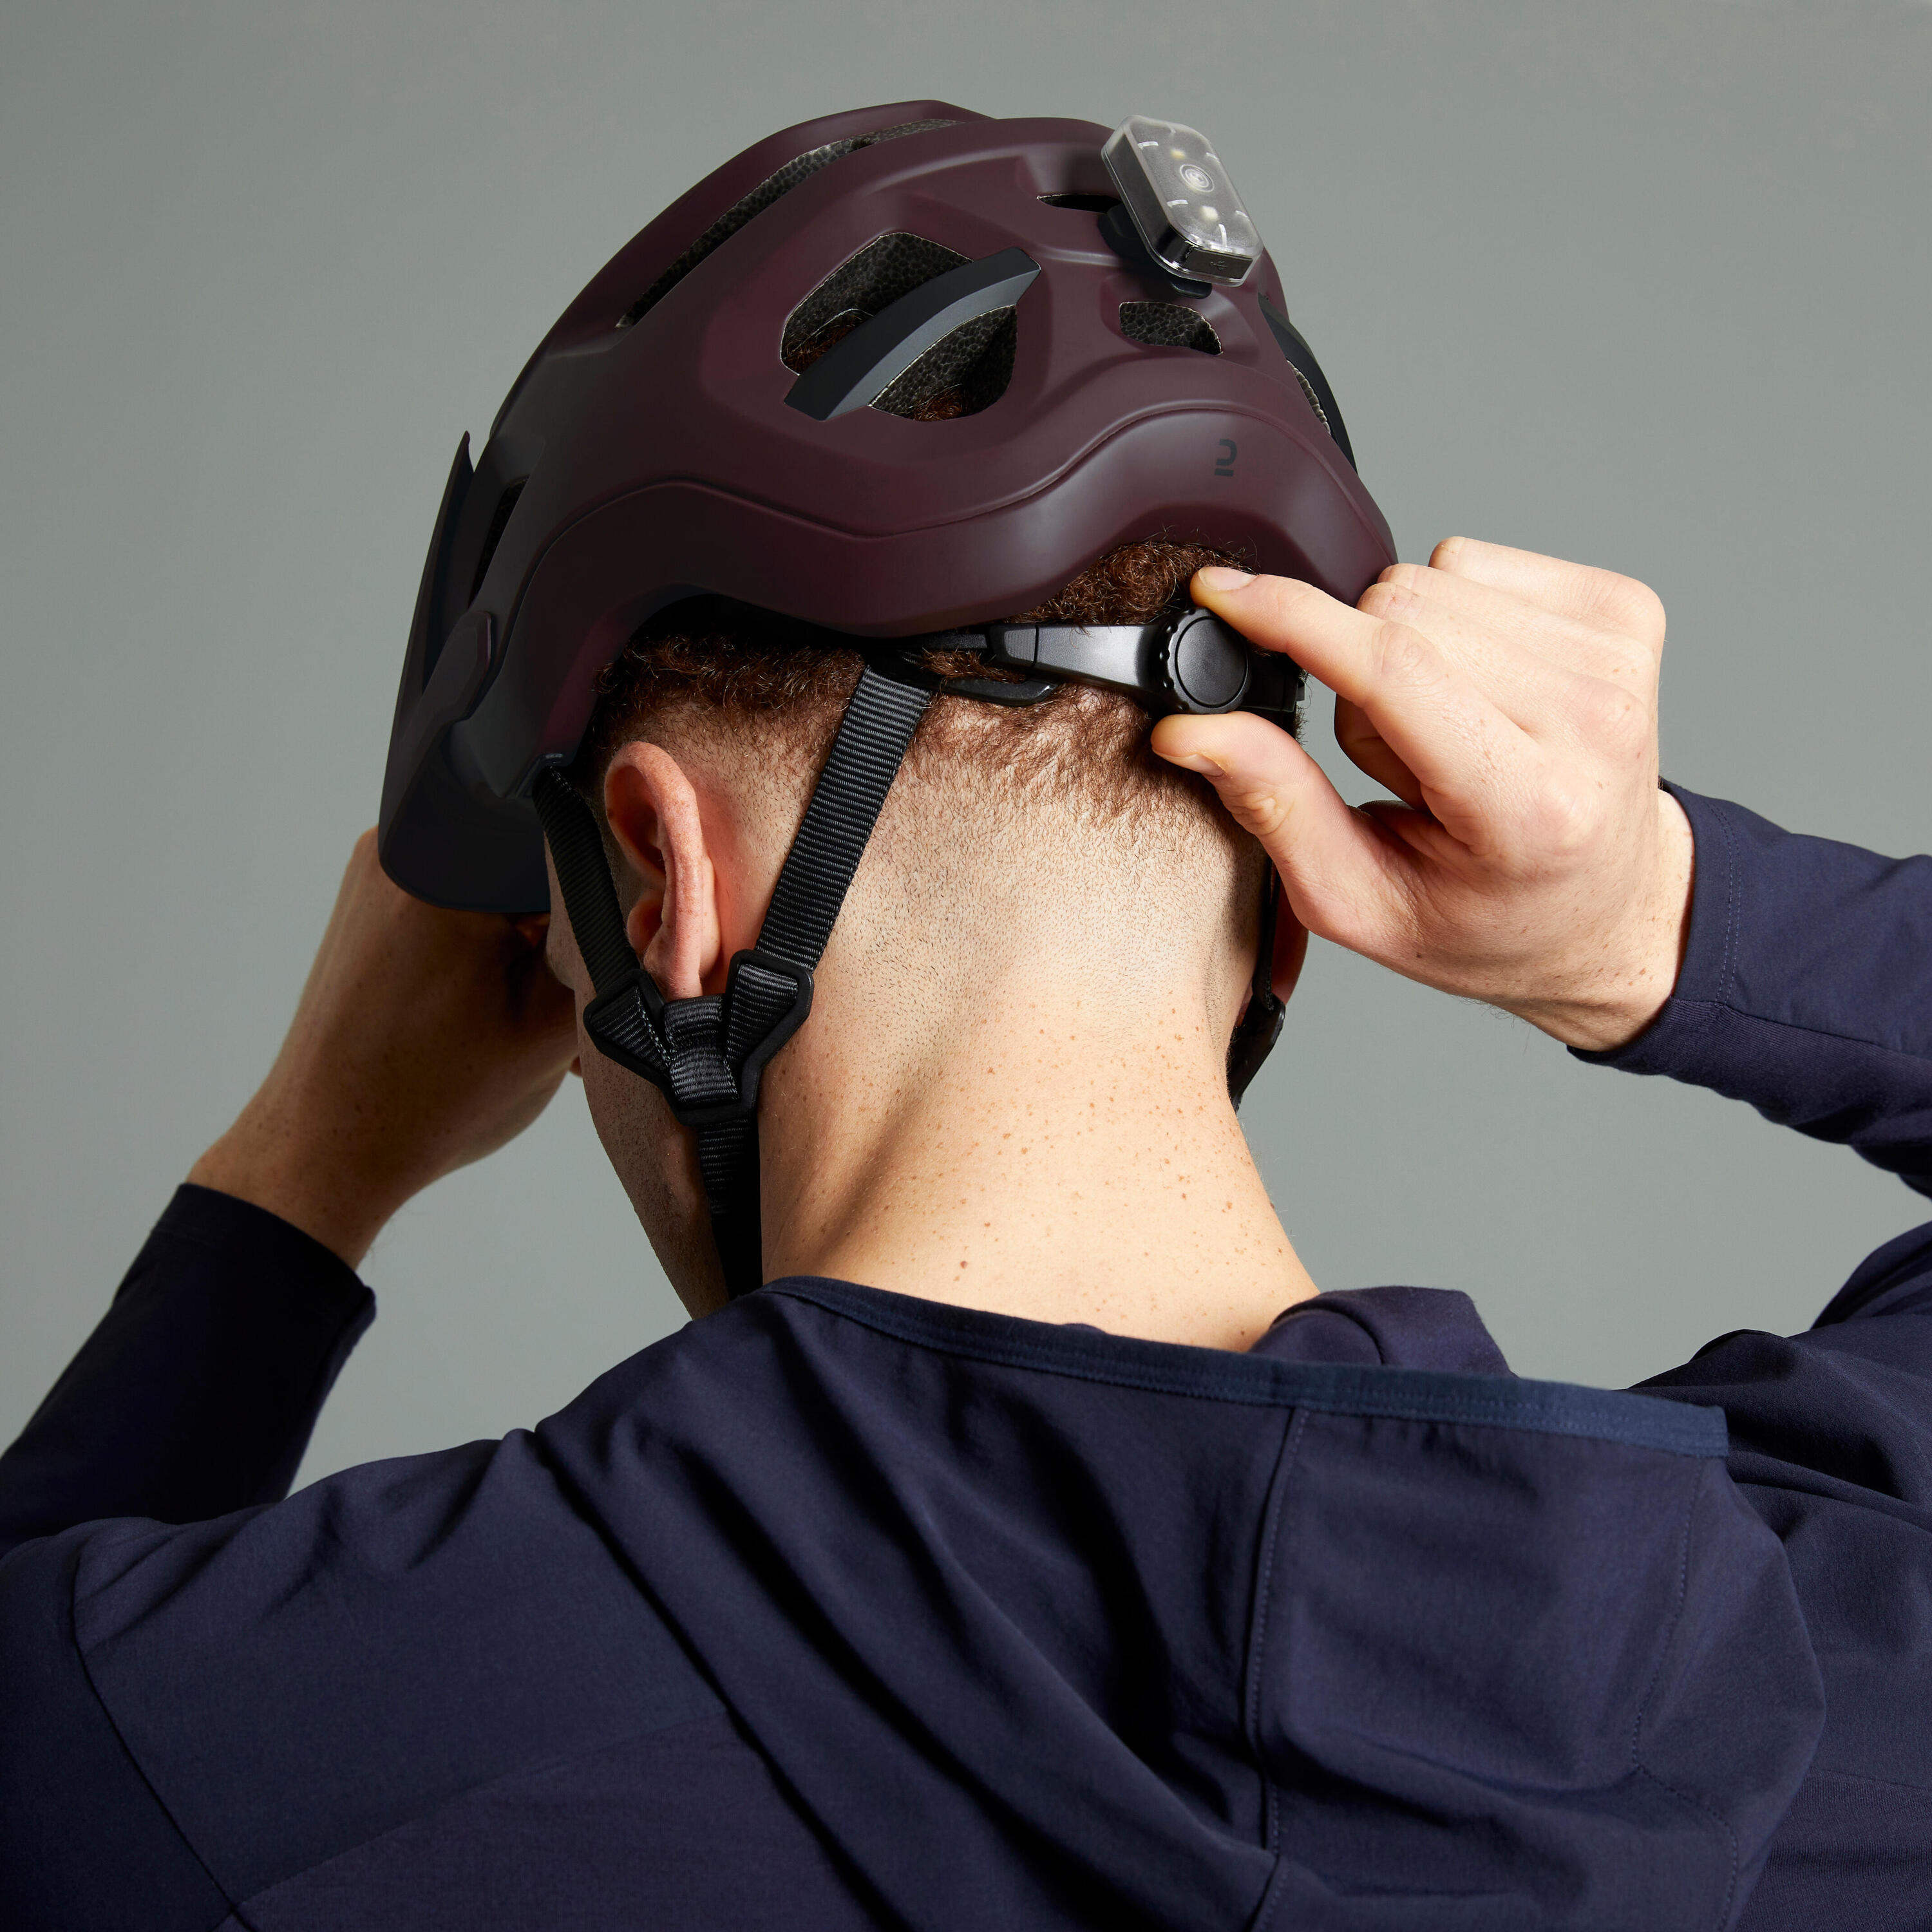 Mountain Bike Helmet EXPL 500 - Burgundy 13/23